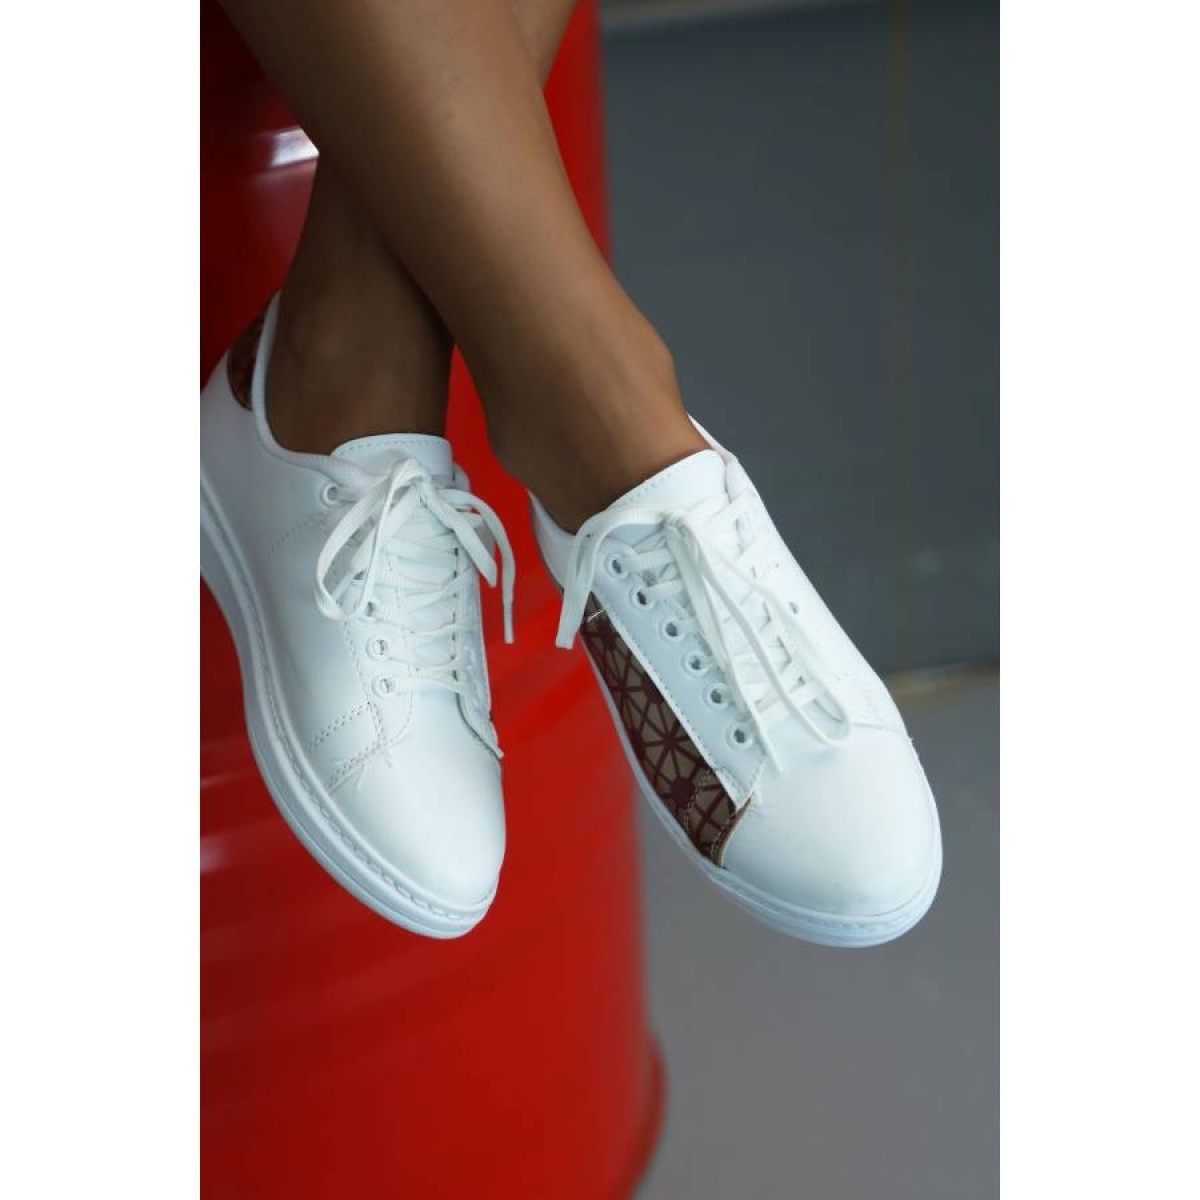 Flo Beyaz-Bordo Kadın Spor Ayakkabı 5013-20-101001. 5